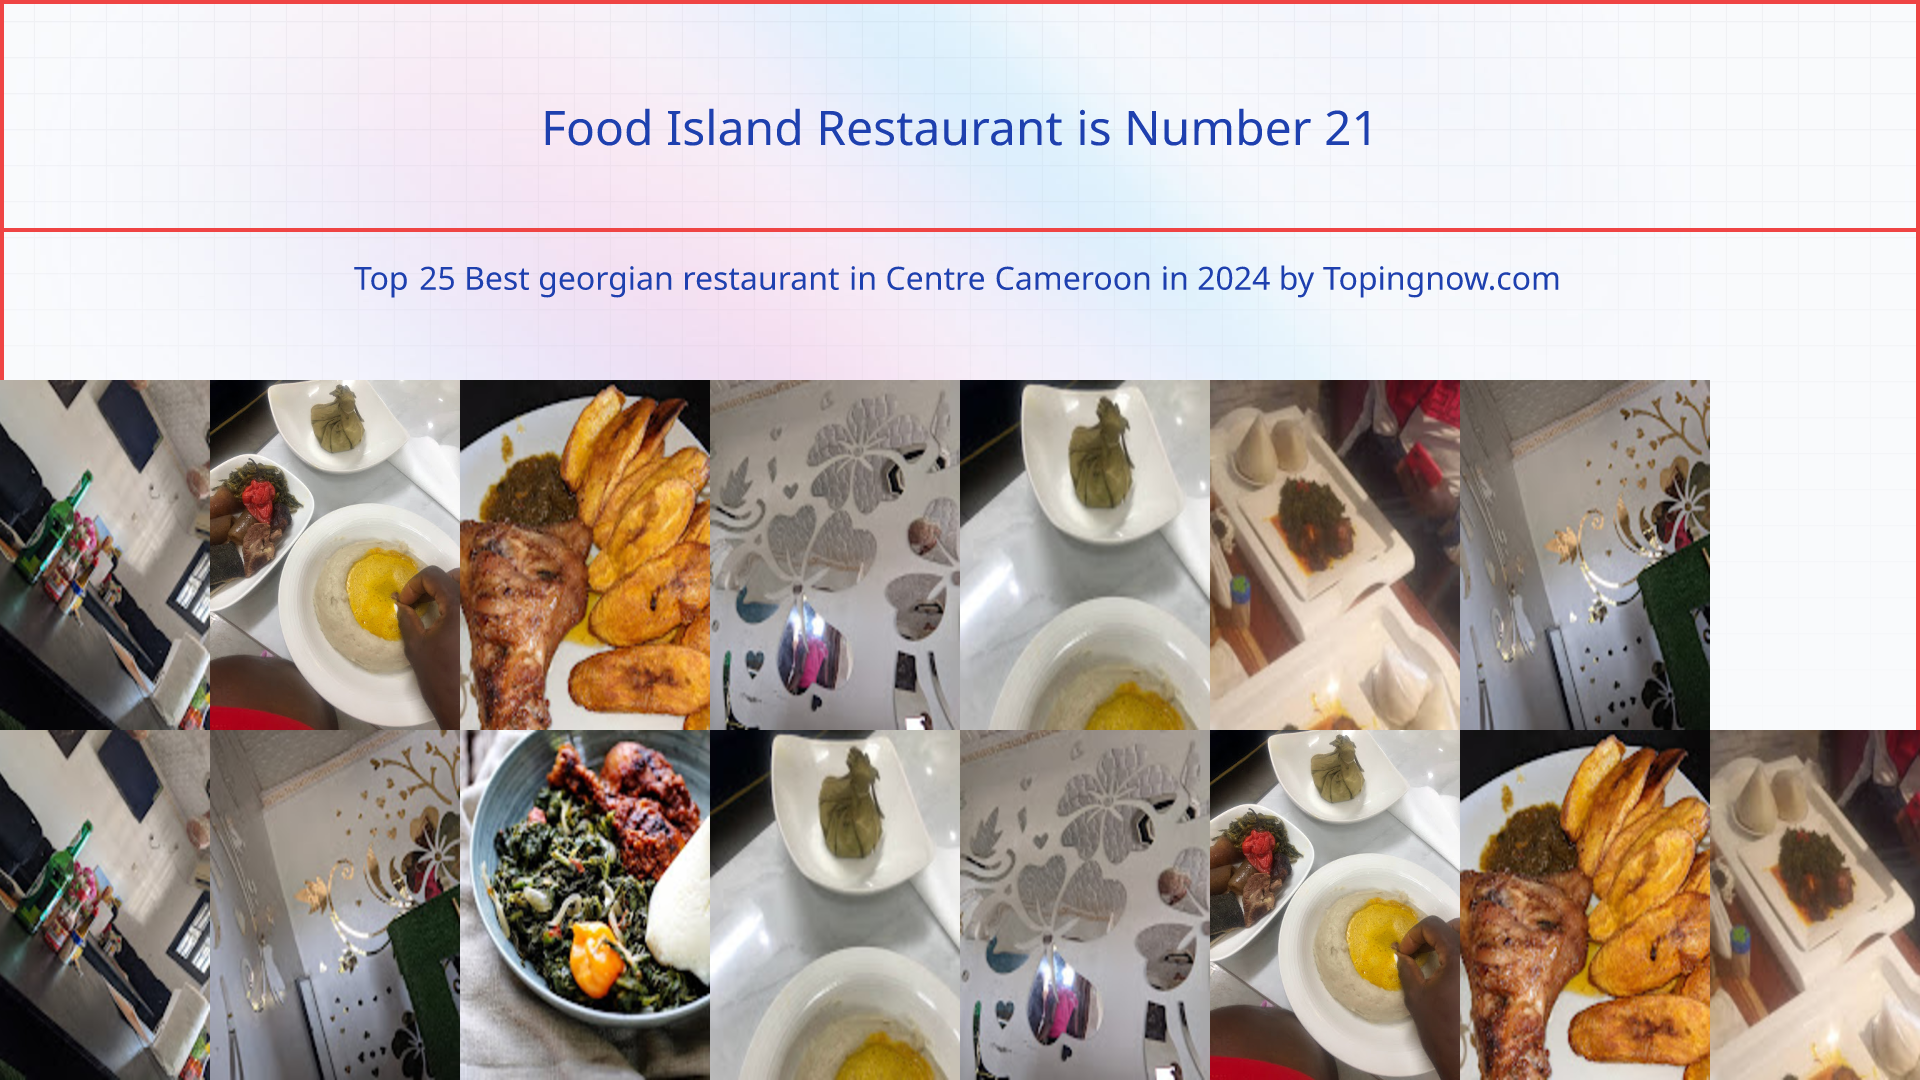 Food Island Restaurant: Top 25 Best georgian restaurant in Centre Cameroon in 2024